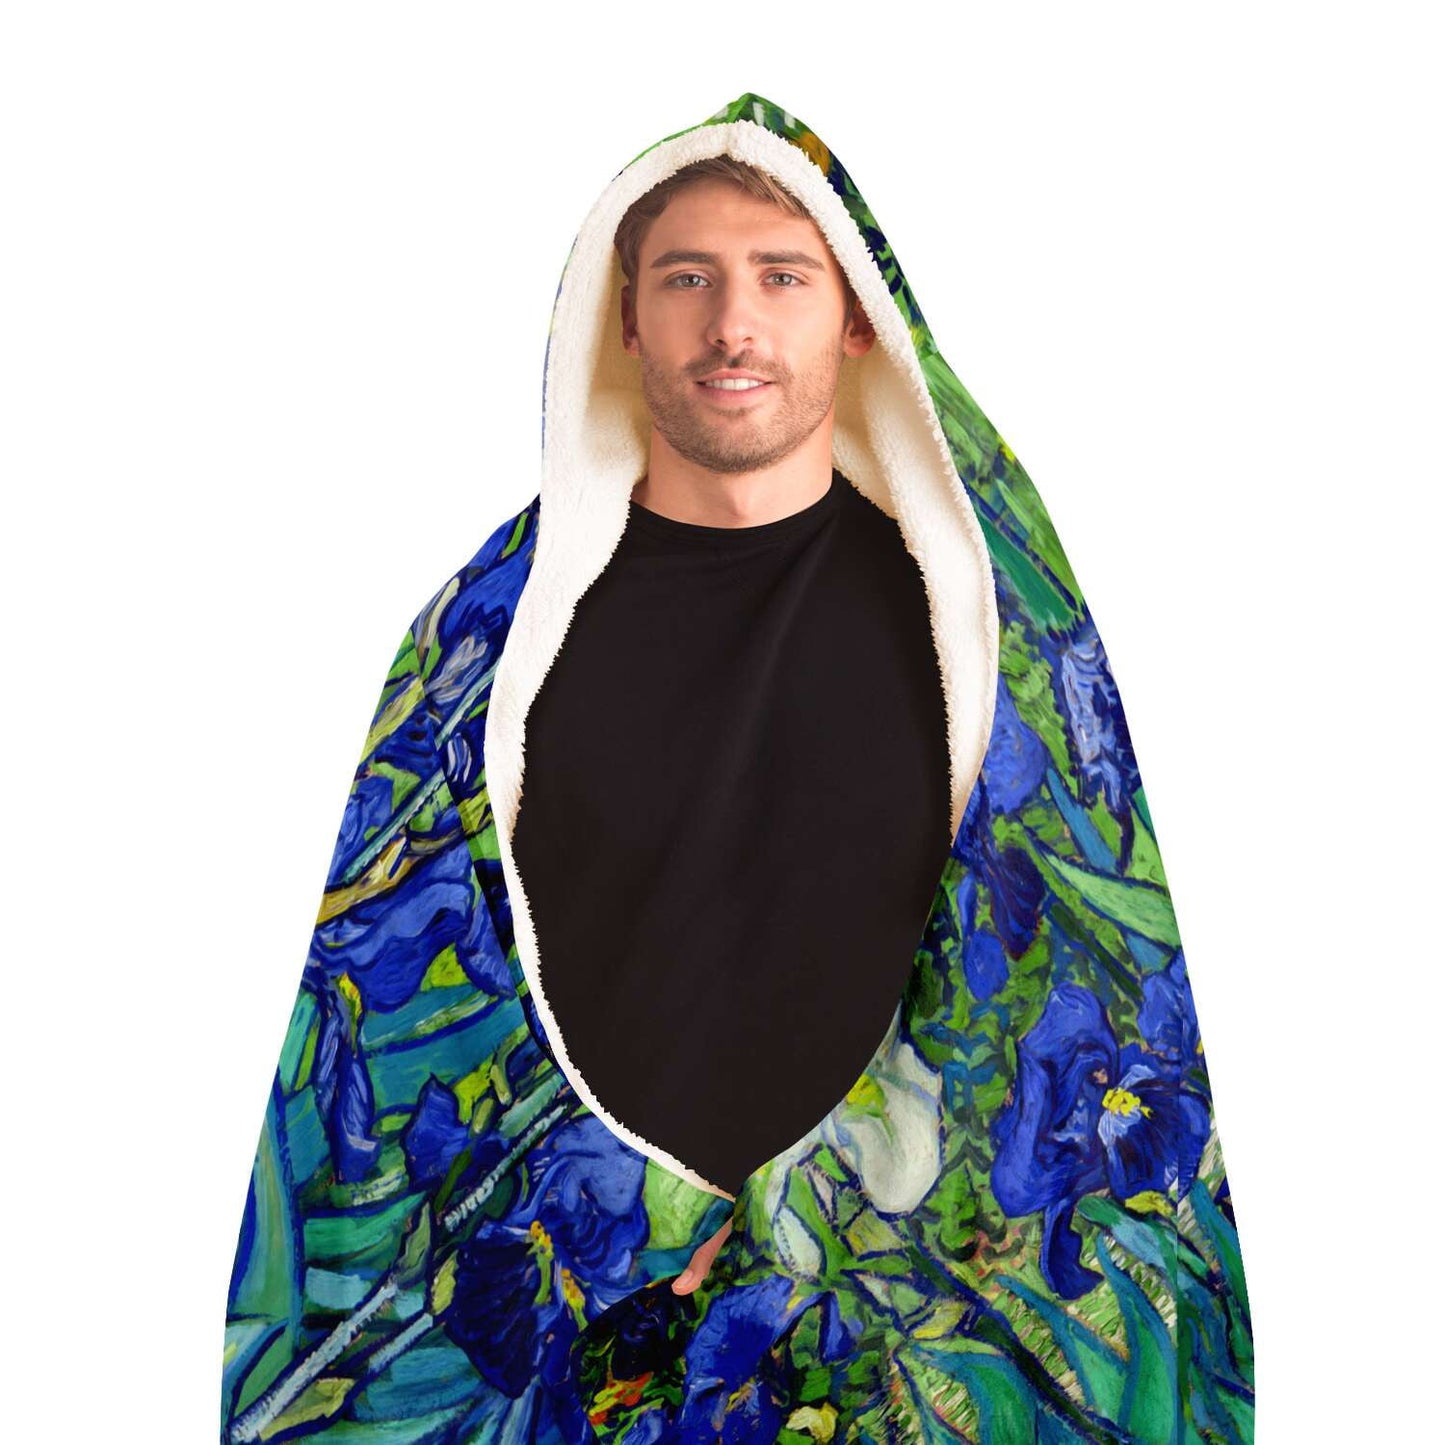 Van Gogh Irises Hooded Blanket